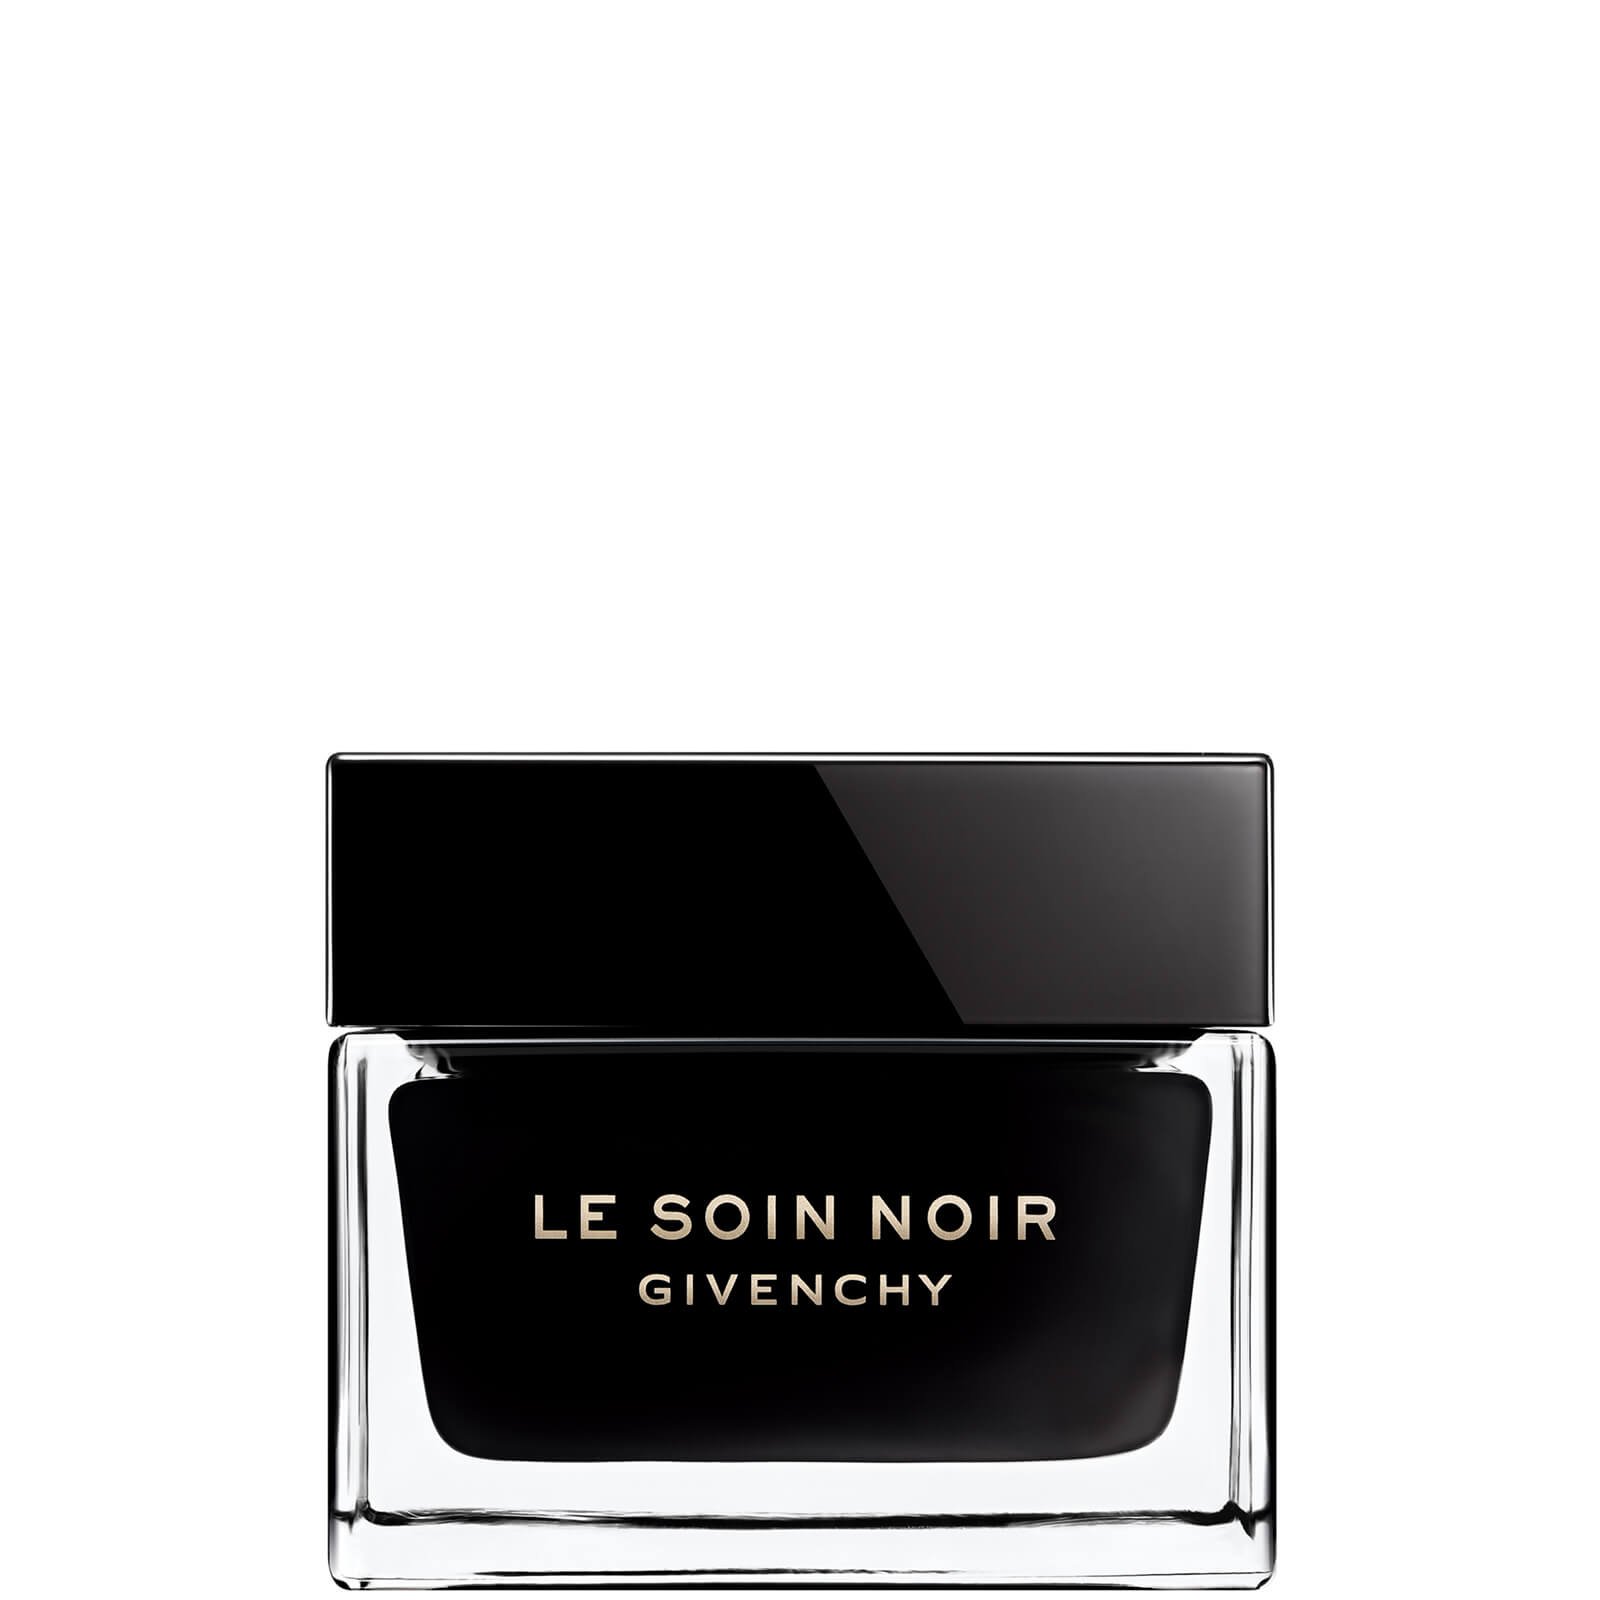 Photos - Cream / Lotion Givenchy Le Soin Noir Cream 50ml P056222 